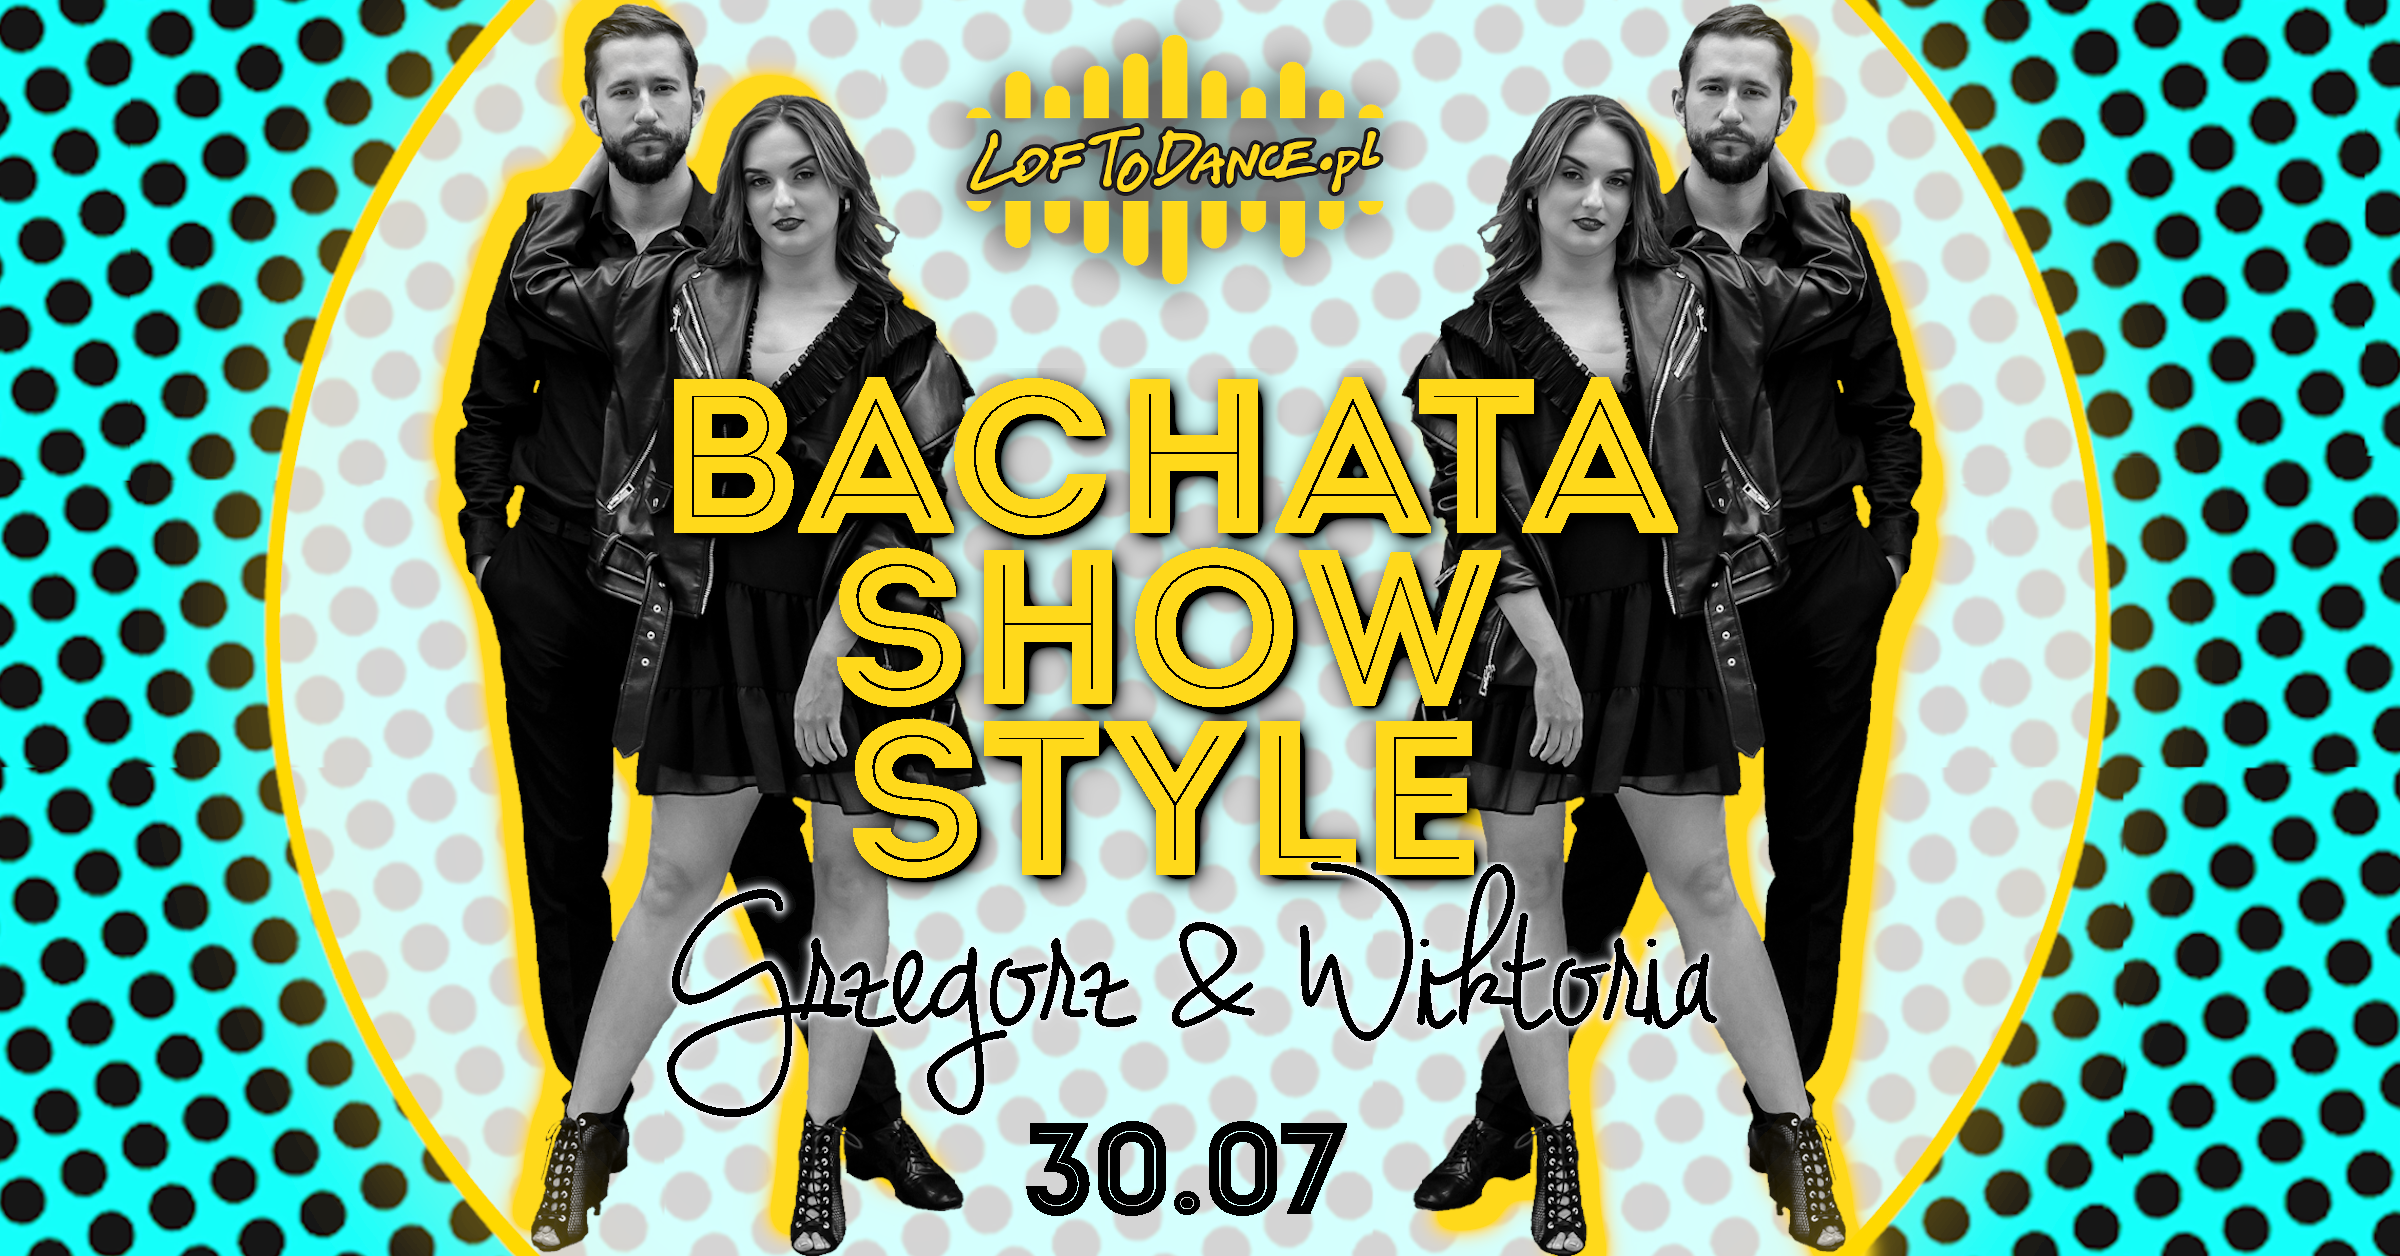 Bachata show style z Grzegorzem i Wiktorią! - sklep Loftodance